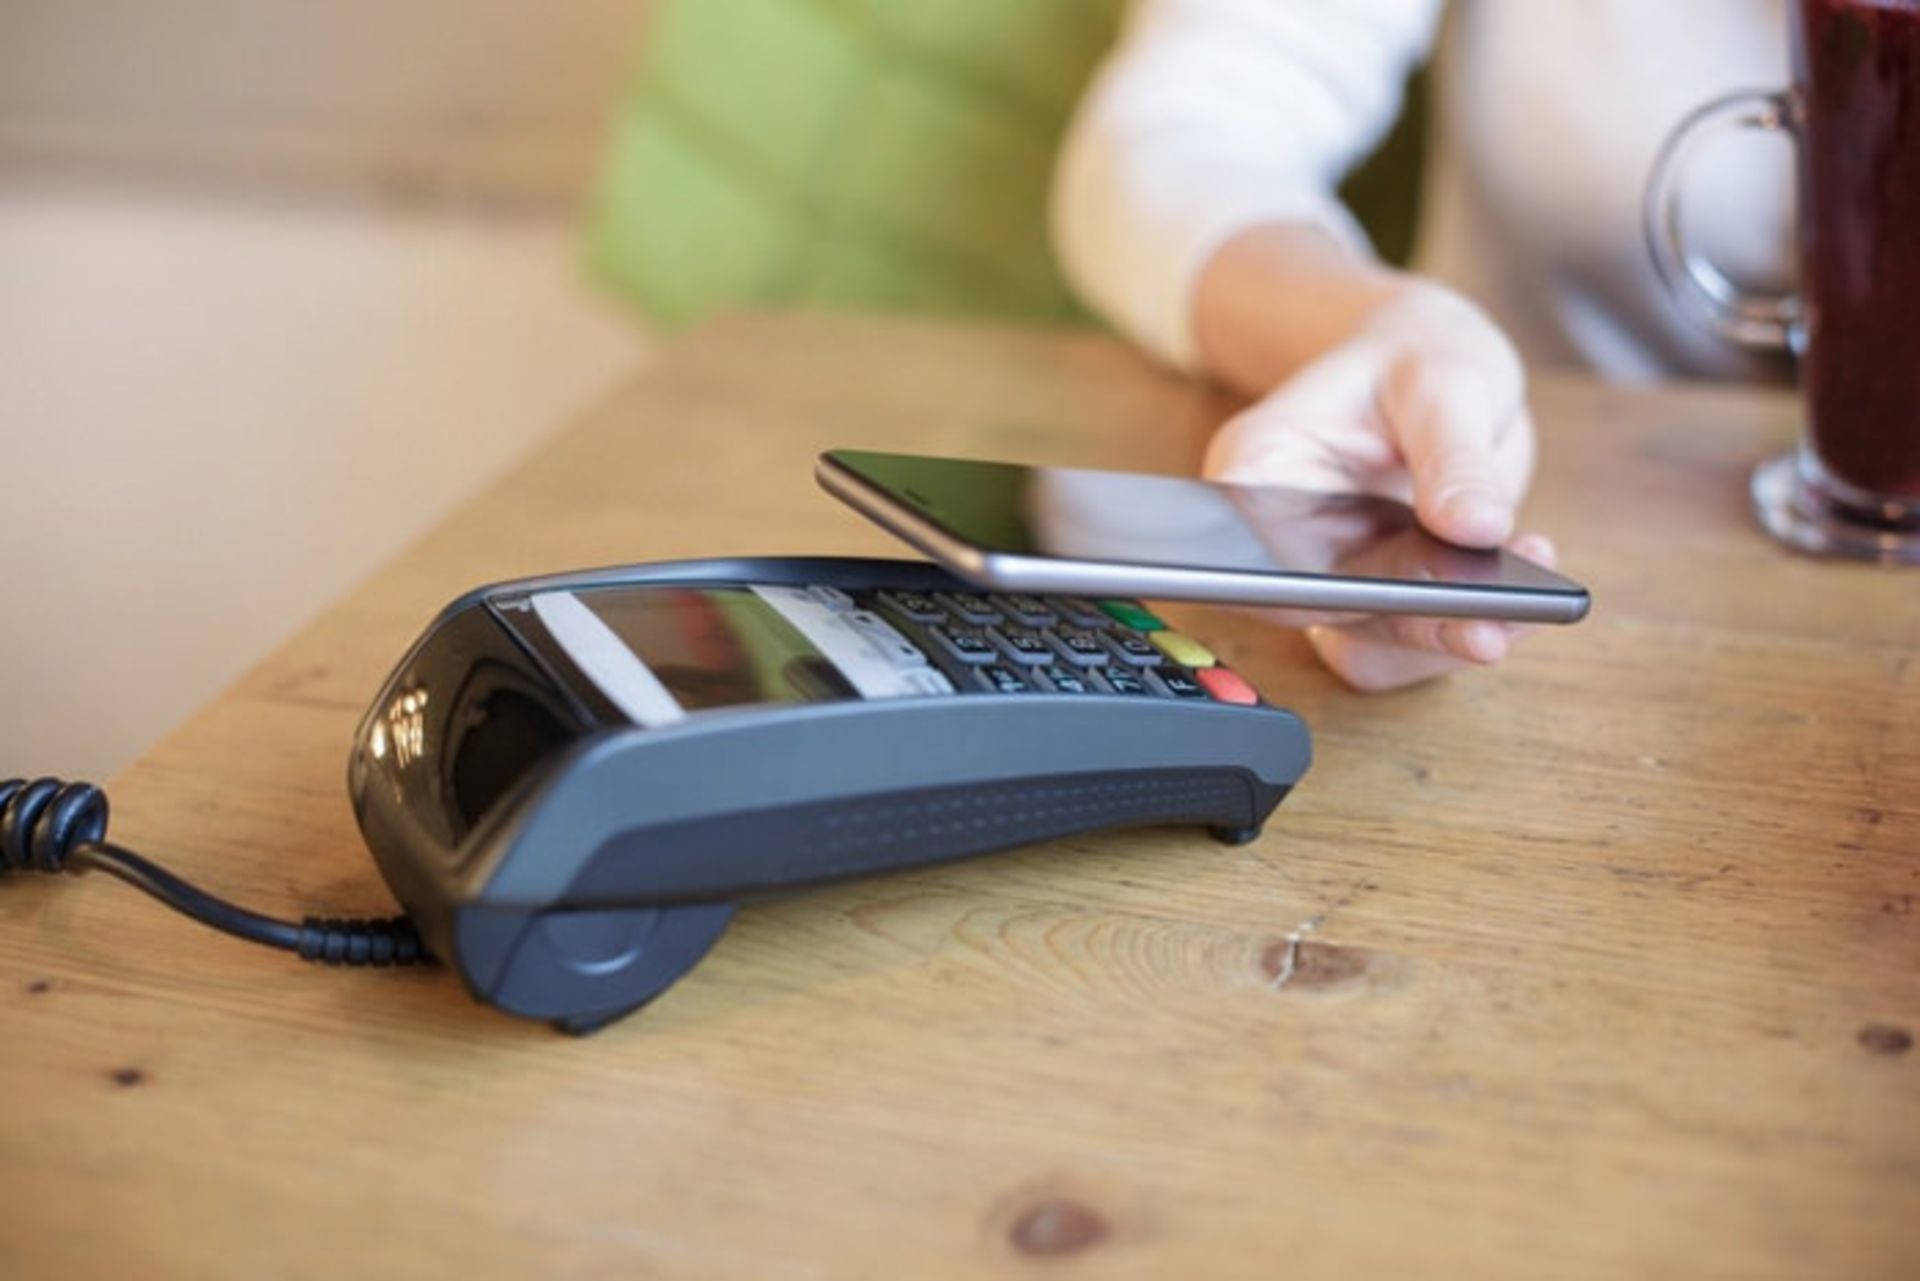 پرداخت موبایلی با NFC